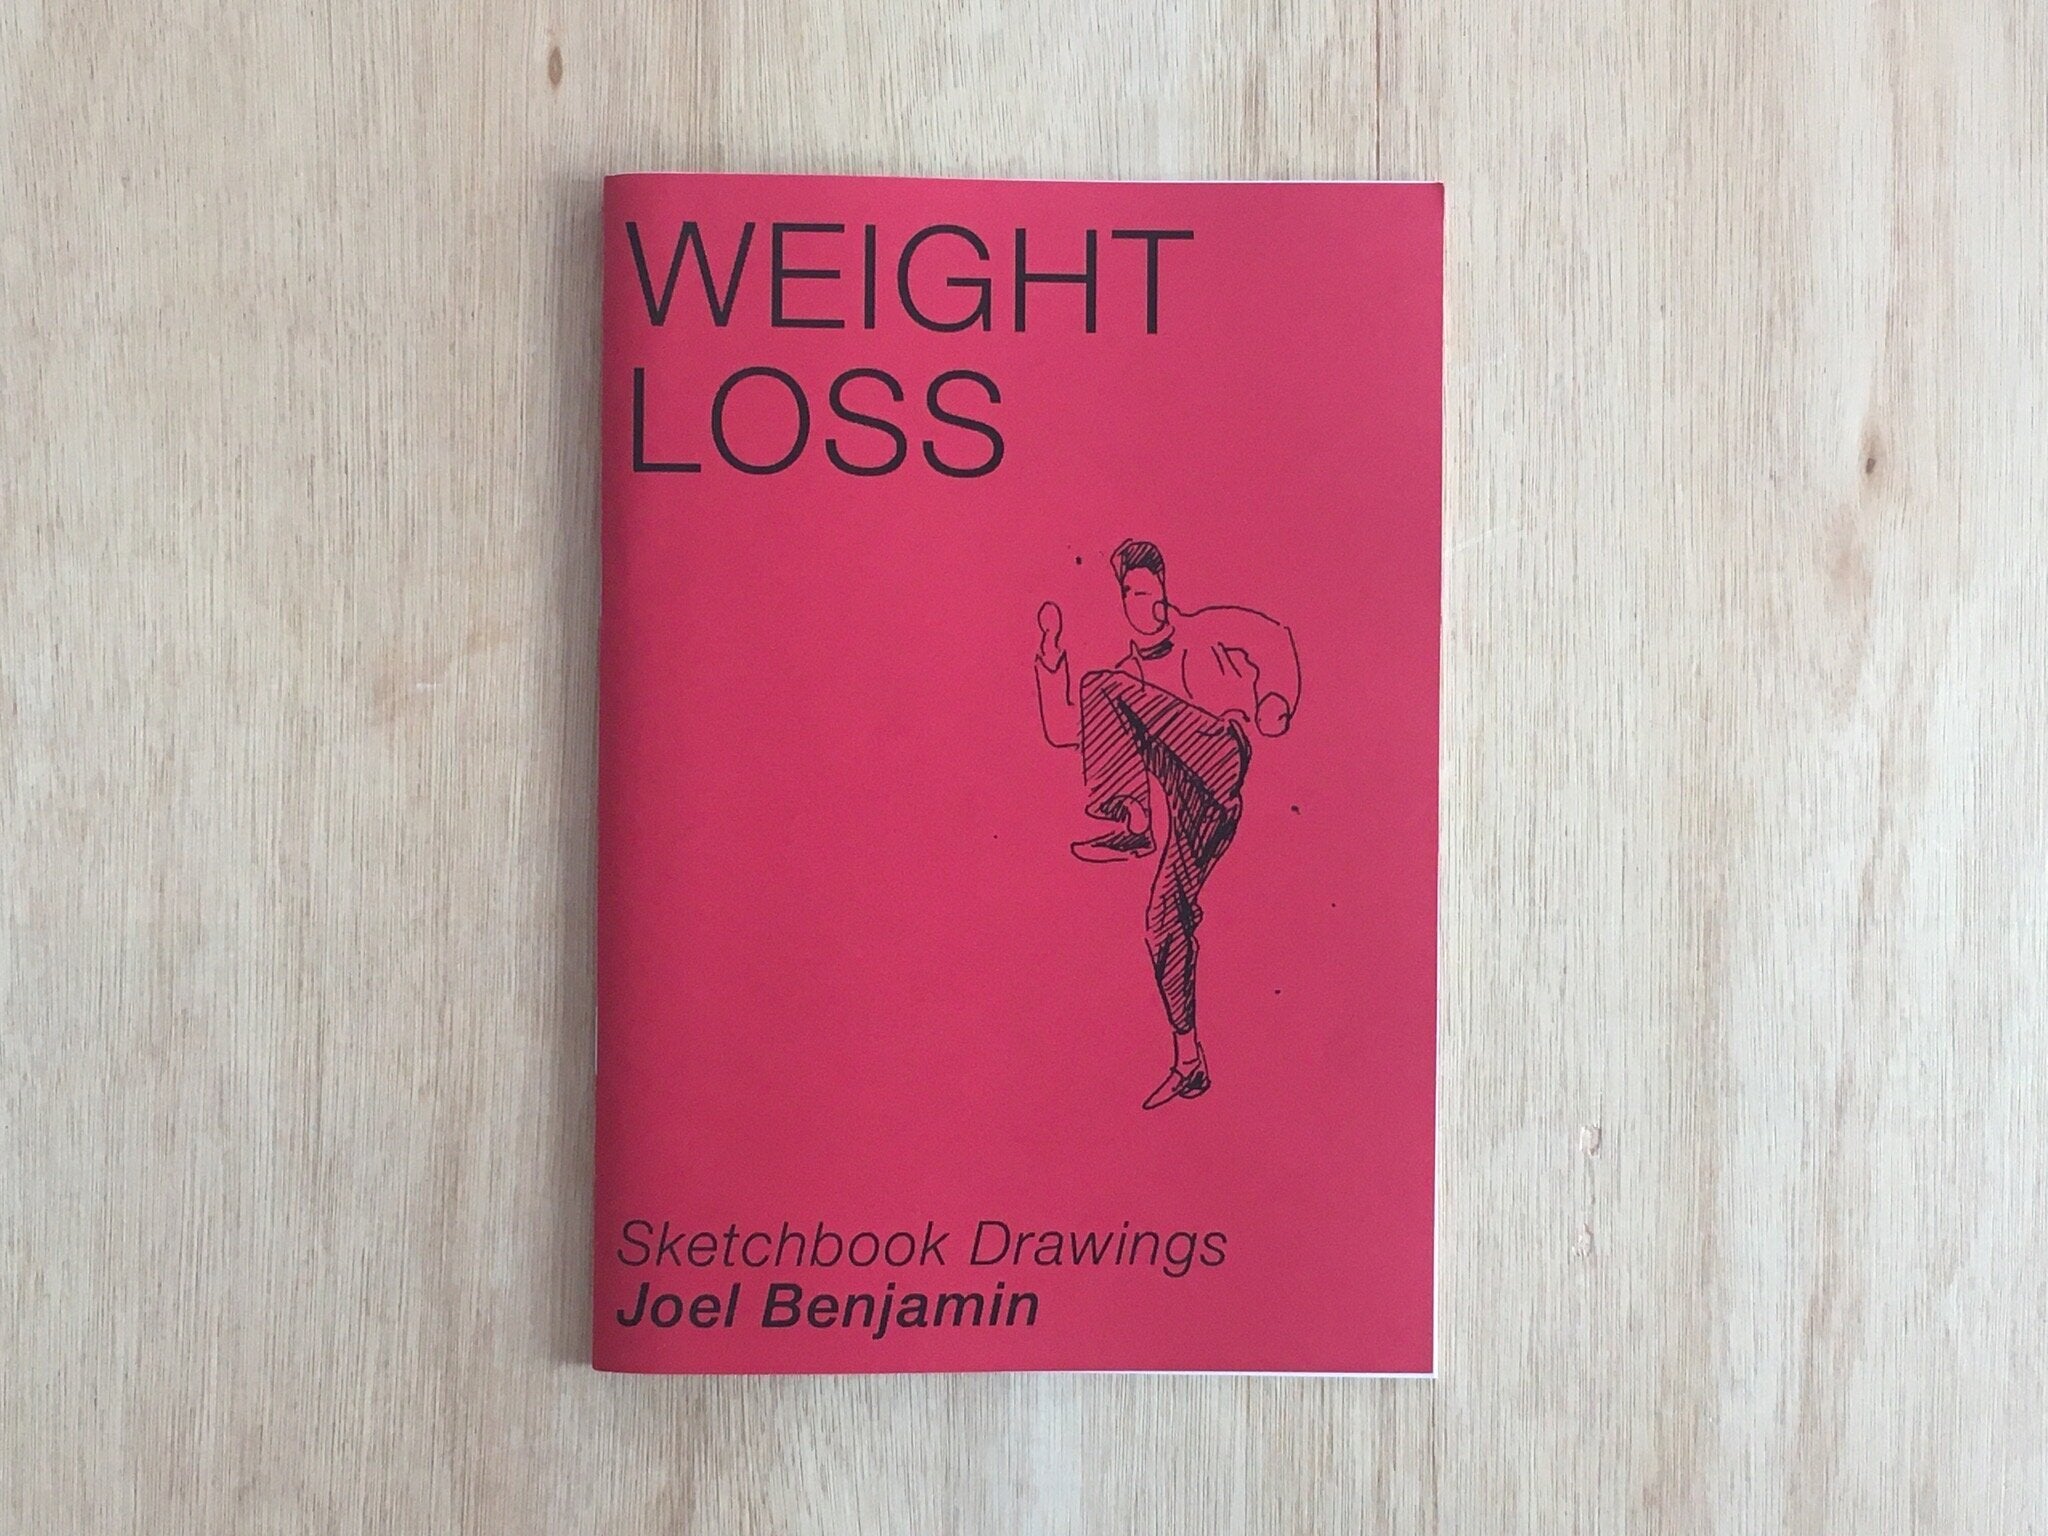 WEIGHT LOSS: SKETCHBOOK DRAWINGS by Joel Benjamin